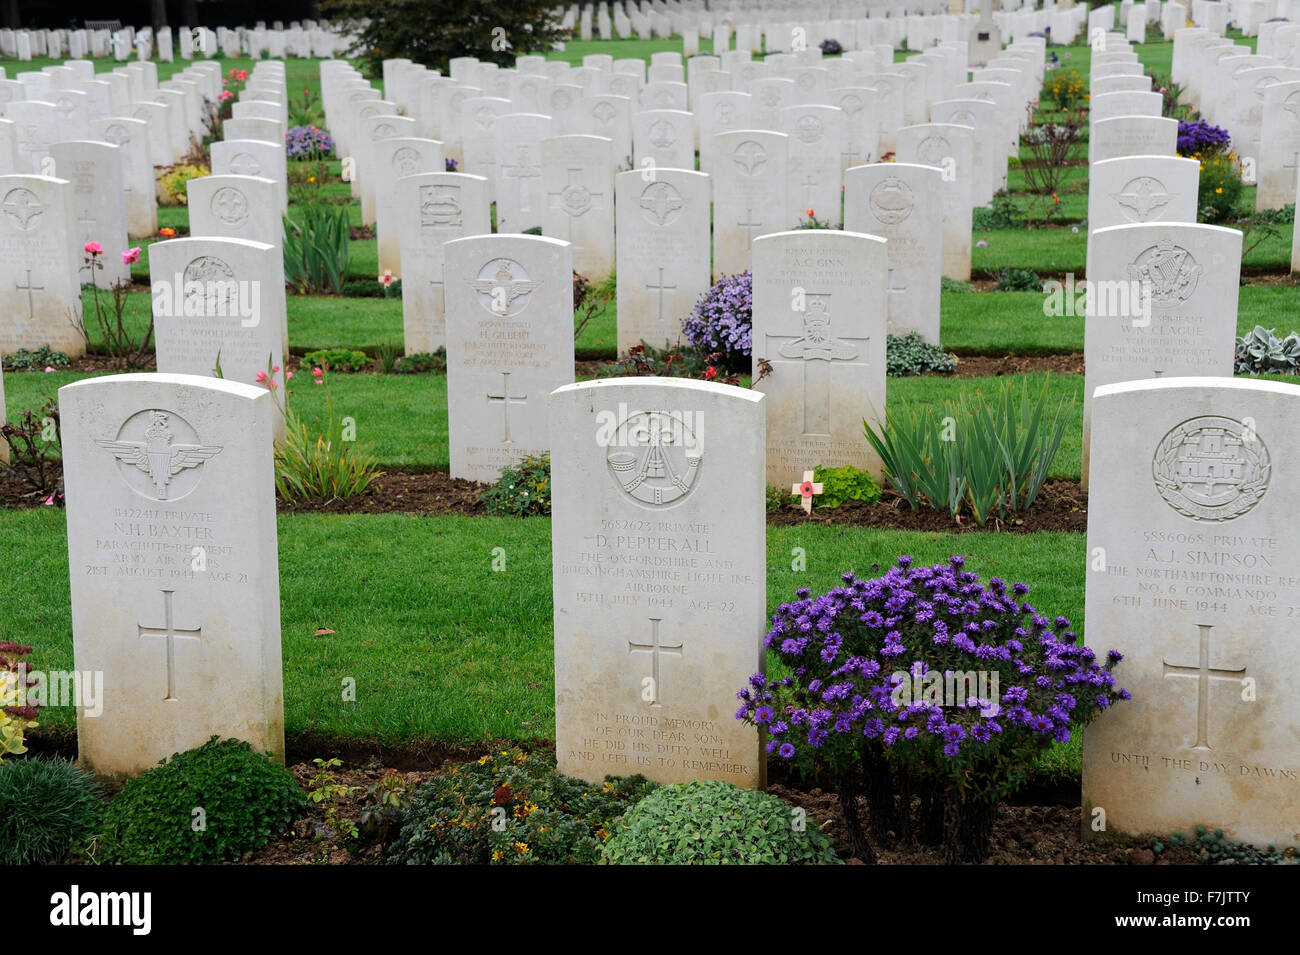 D giorno, 6 giugno 1944, Ranville, guerra britannica Cimitero e memoriale, prima liberate città di Francia, Calvados, Normandie,Francia,SECONDA GUERRA MONDIALE Foto Stock